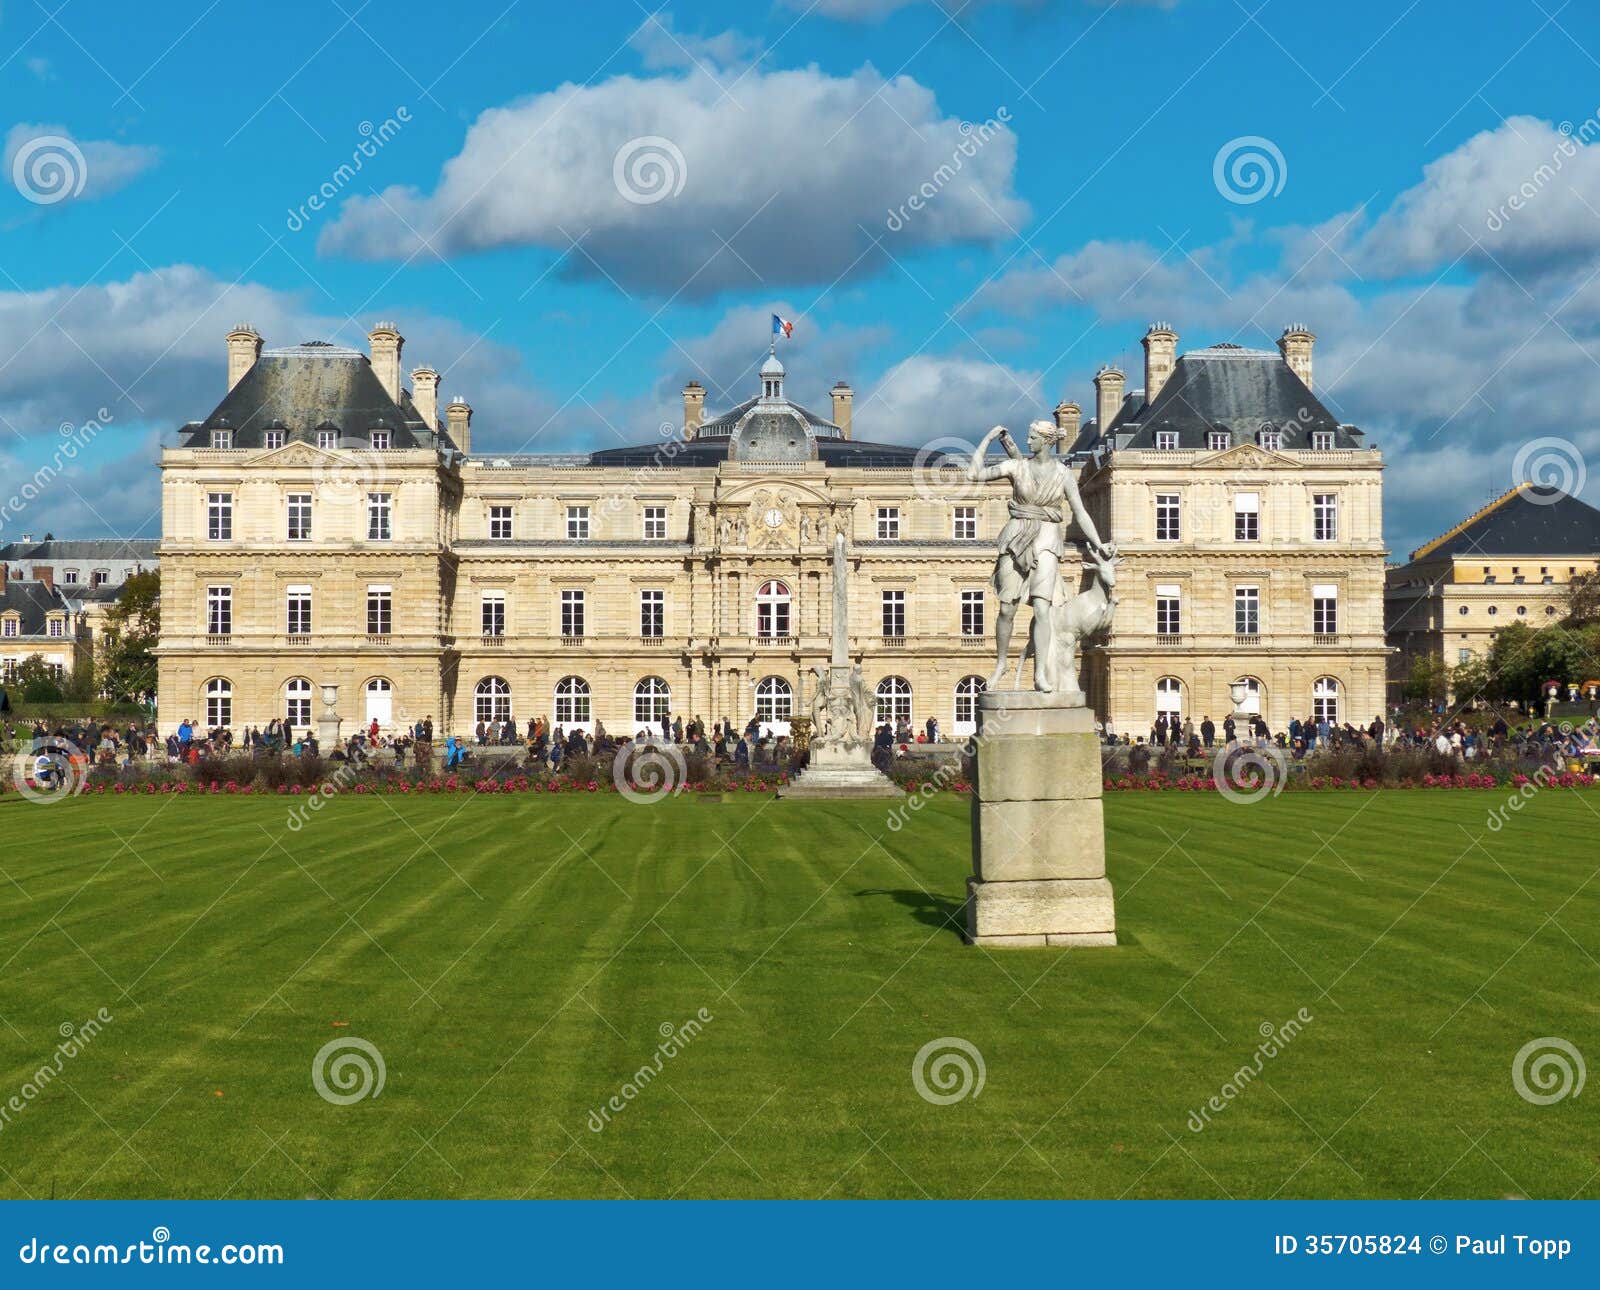 Κήποι του λουξεμβούργιου πάρκου στο Παρίσι Γαλλία. Το παλαιό κτήριο Συγκλήτου στους κήπους του λουξεμβούργιου πάρκου στο Παρίσι, Γαλλία με το μπλε ουρανό και τα σύννεφα.